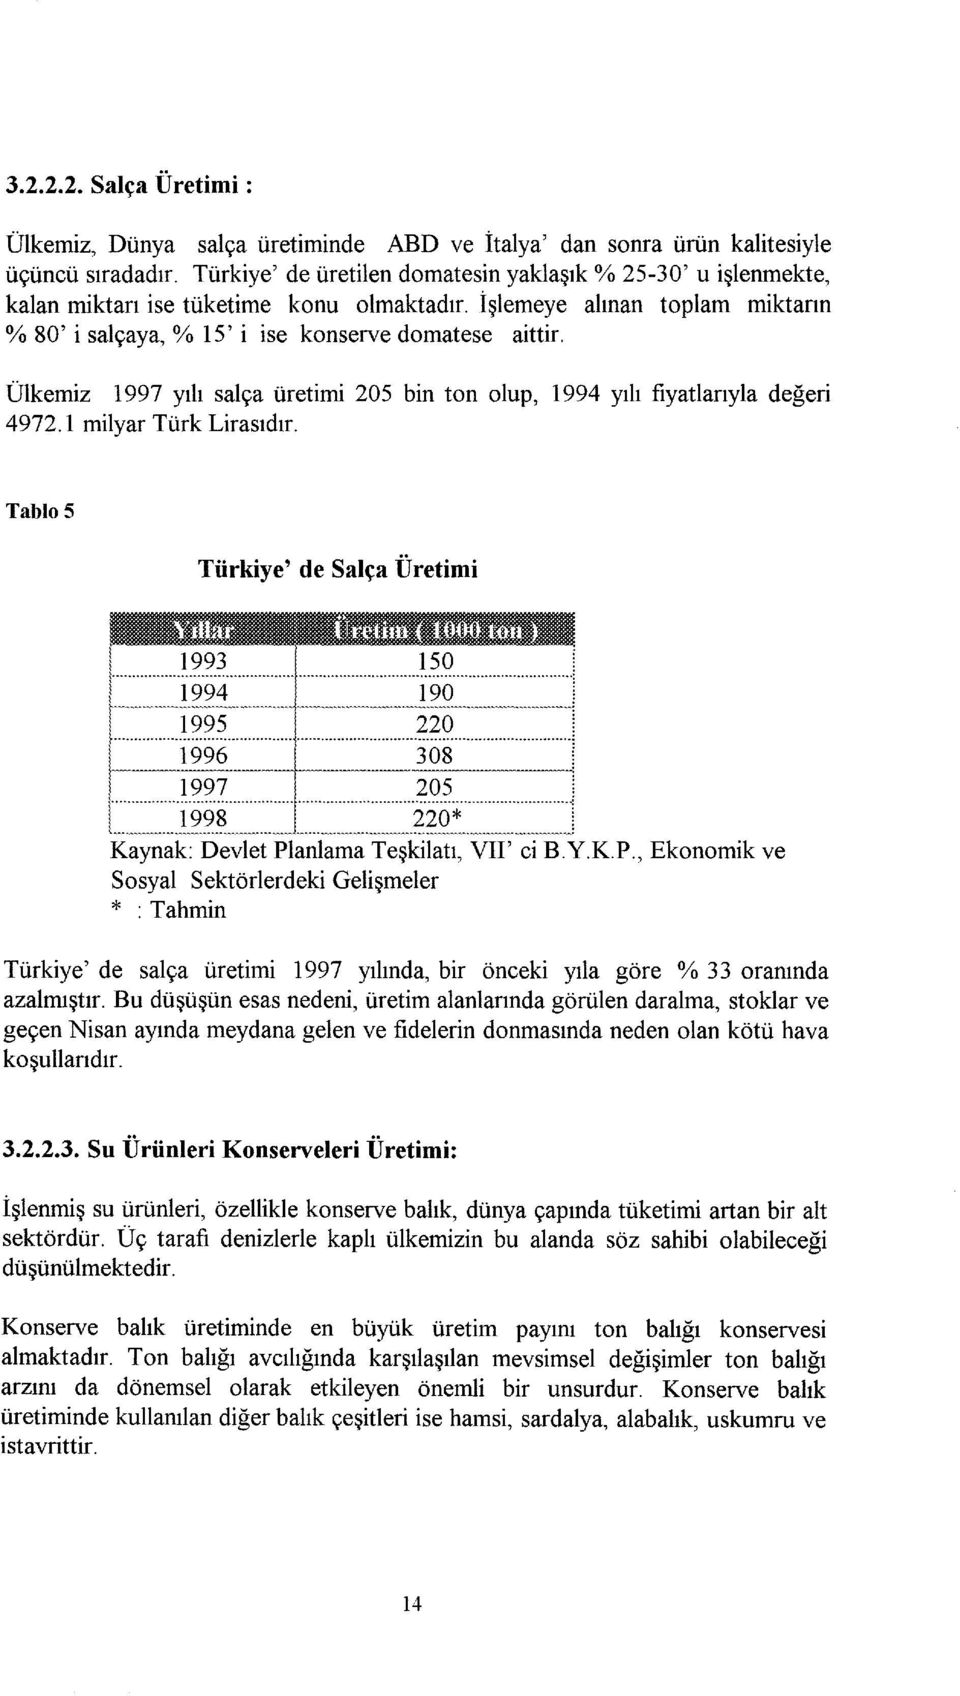 Ülkemiz 1997 yılı salça üretimi 205 bin ton olup, 1994 yılı fiyatlarıyla değeri 4972.1 milyar Türk Lirasıdır. Tablo 5 Türkiye' de Salça Üretimi.